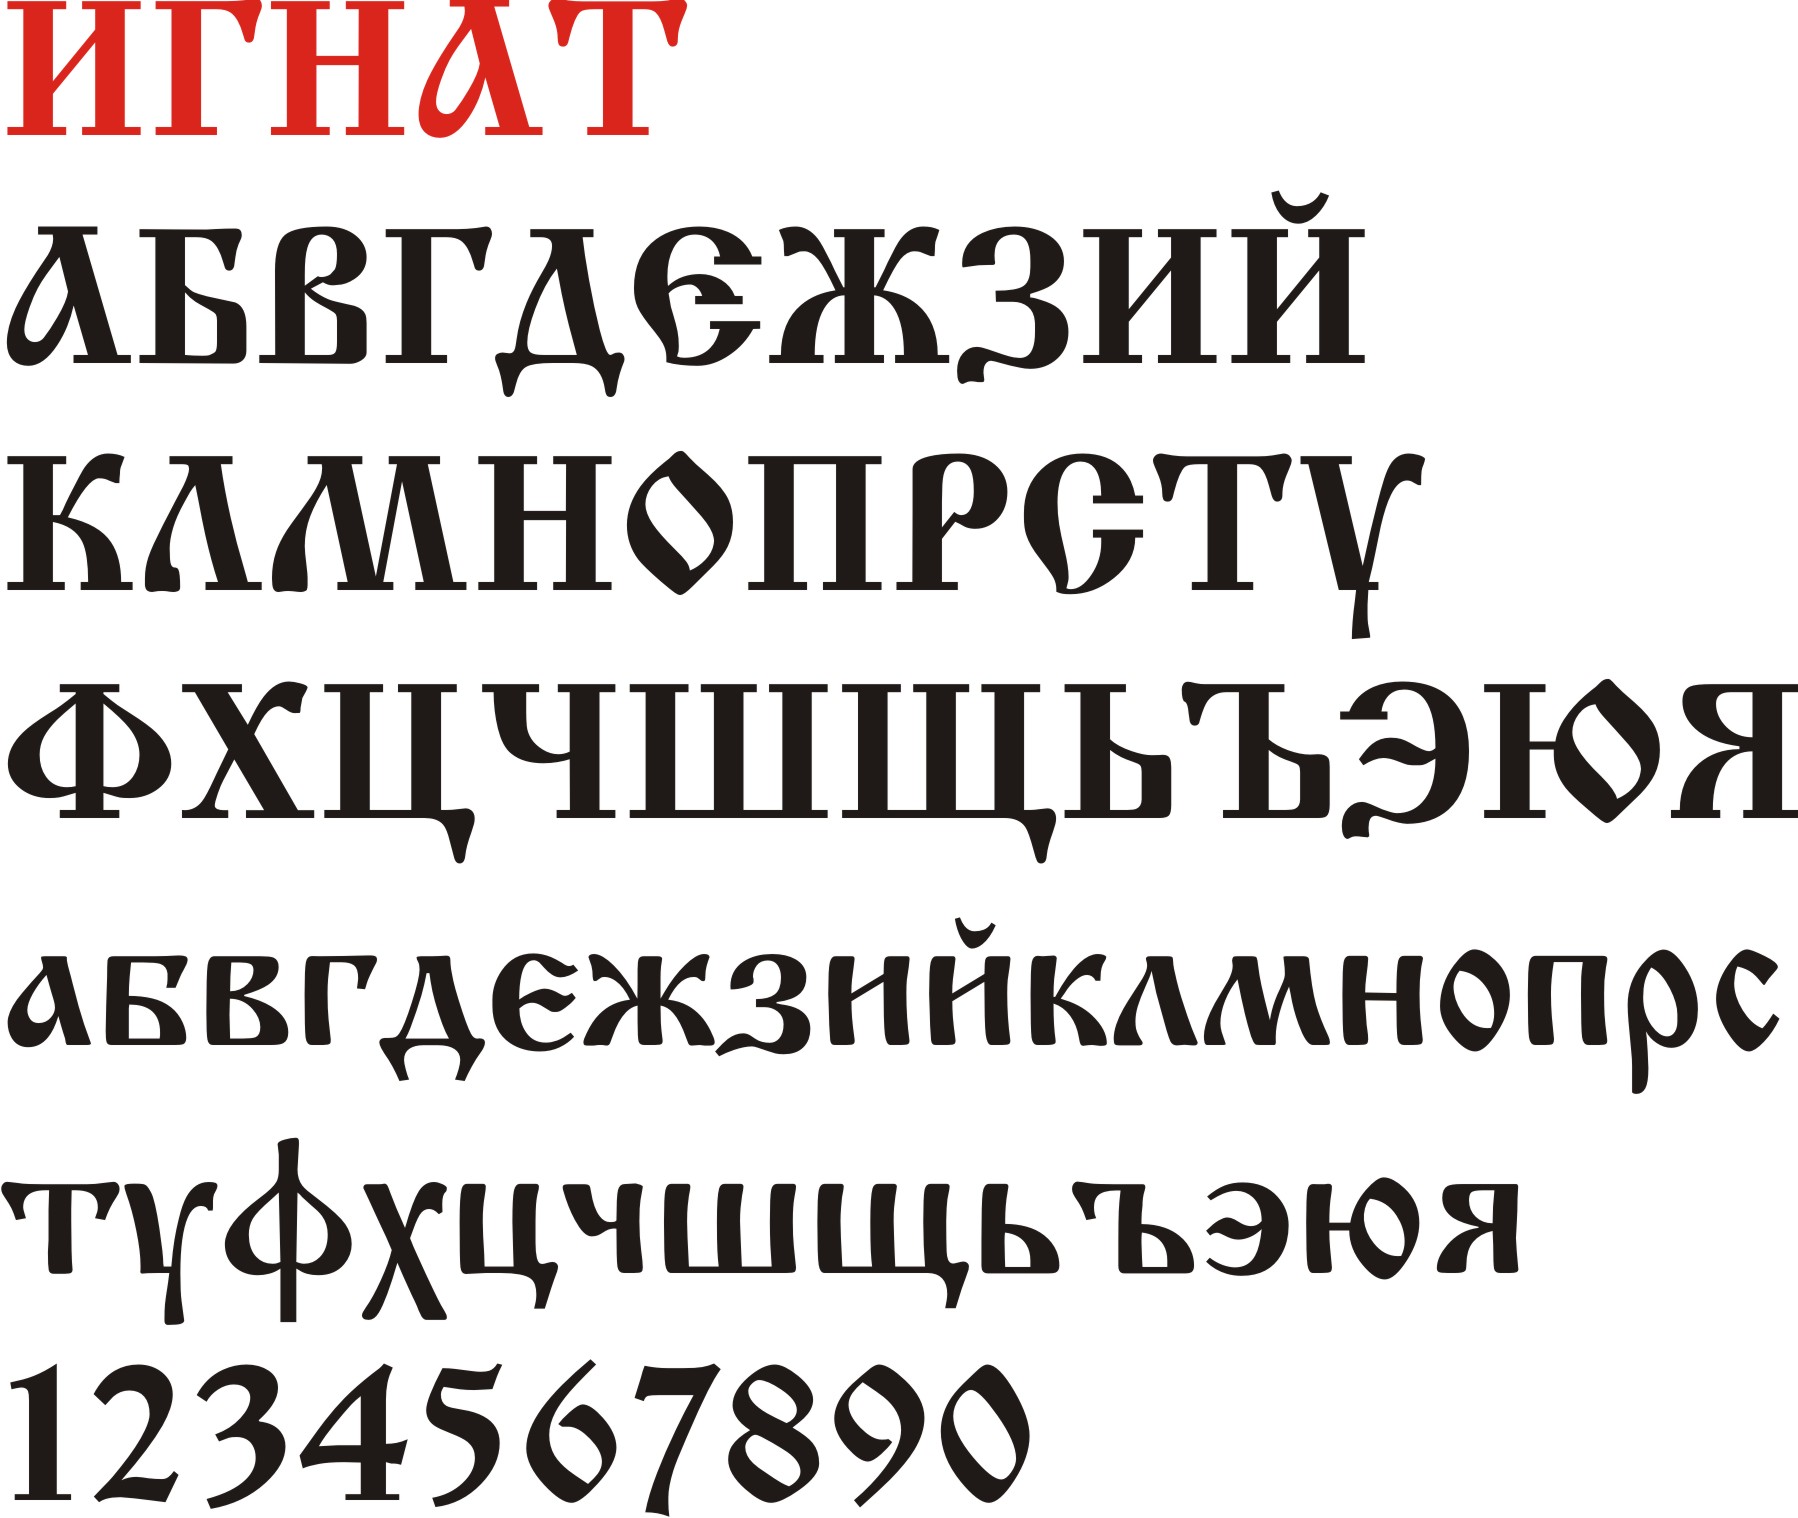 Шрифт для телеграмм русский фото 19